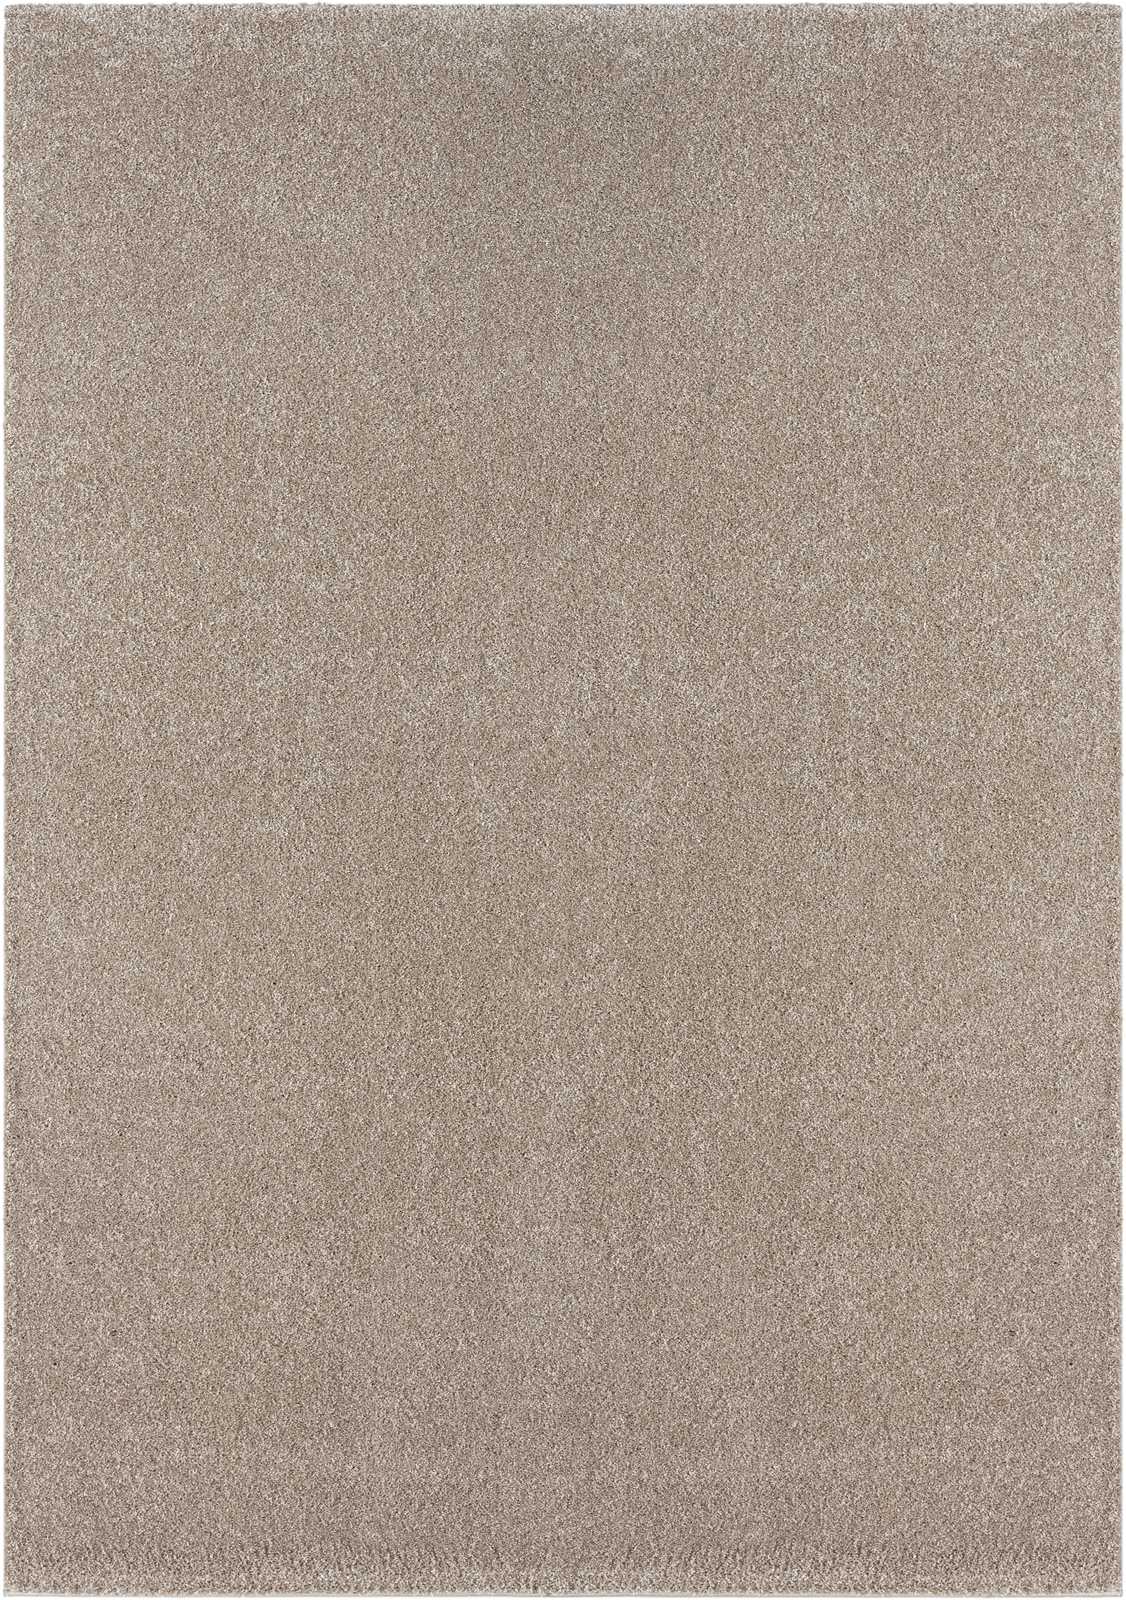             Sanfter Kurzflor Teppich in Beige – 110 x 60 cm
        